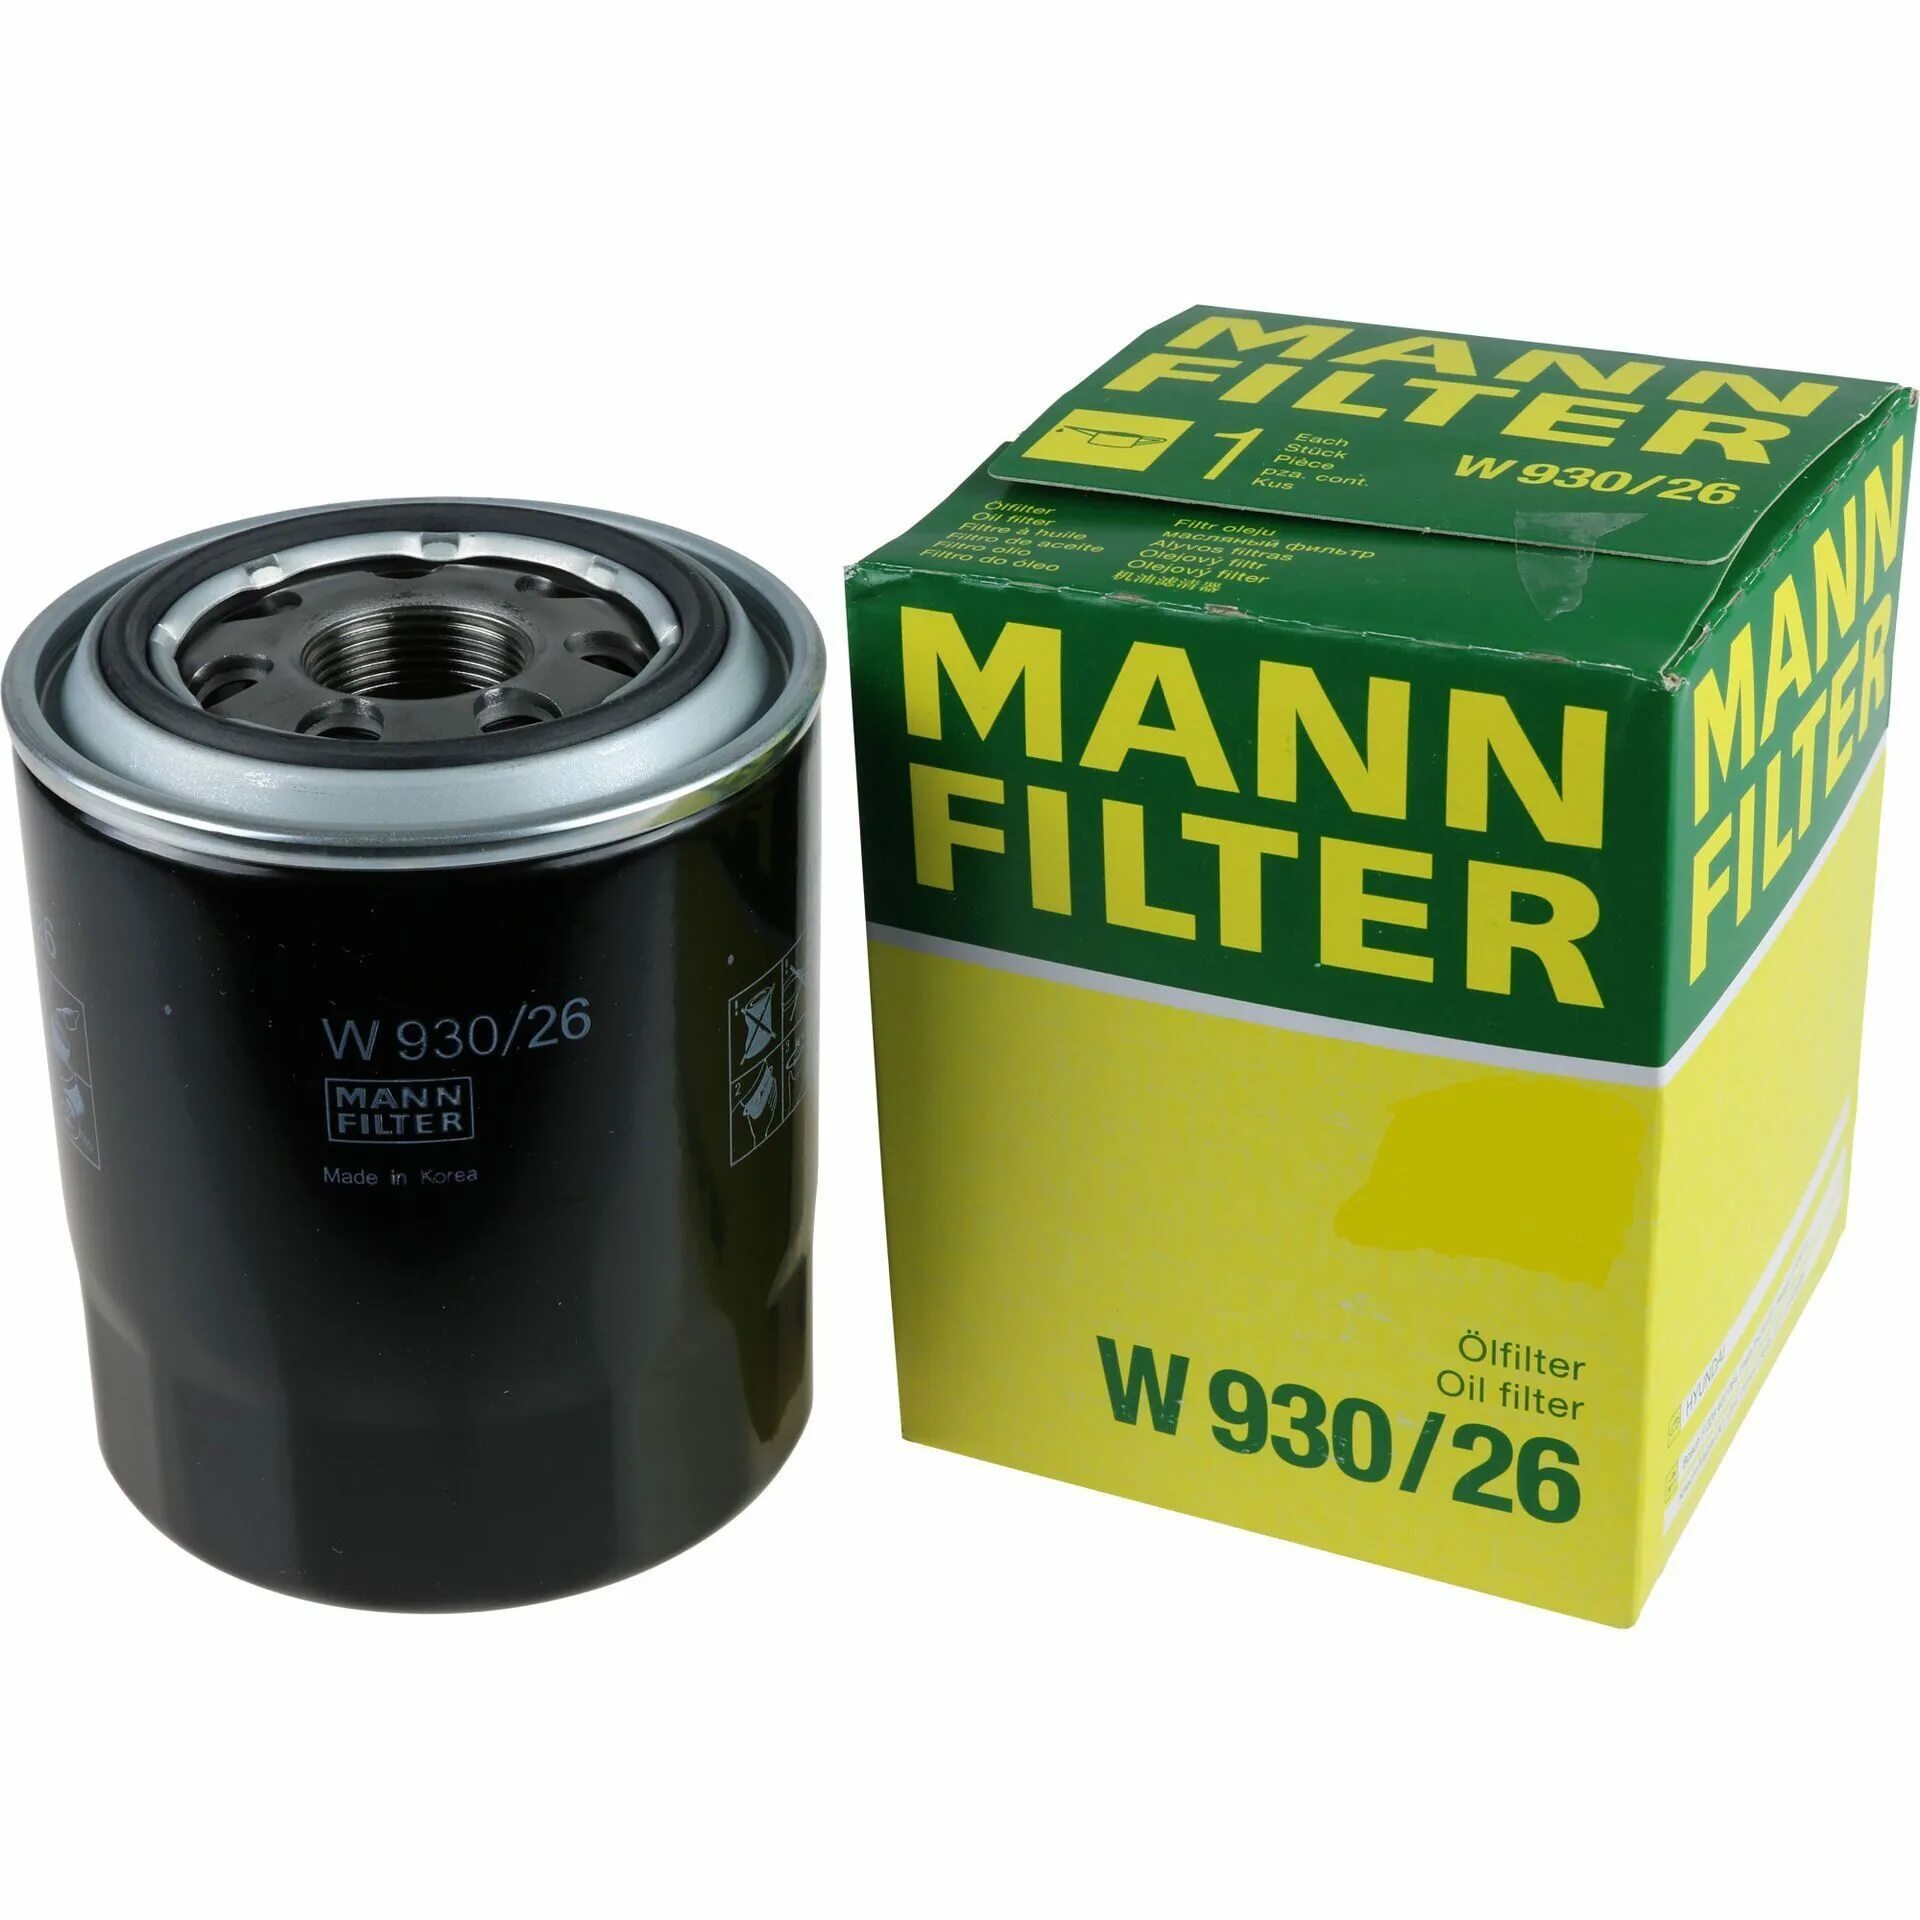 Масляный манн. W93026 Mann фильтр. Mann-Filter w 930/26. Oc540 фильтр масляный. Фильтр масляный Mann w930/20.